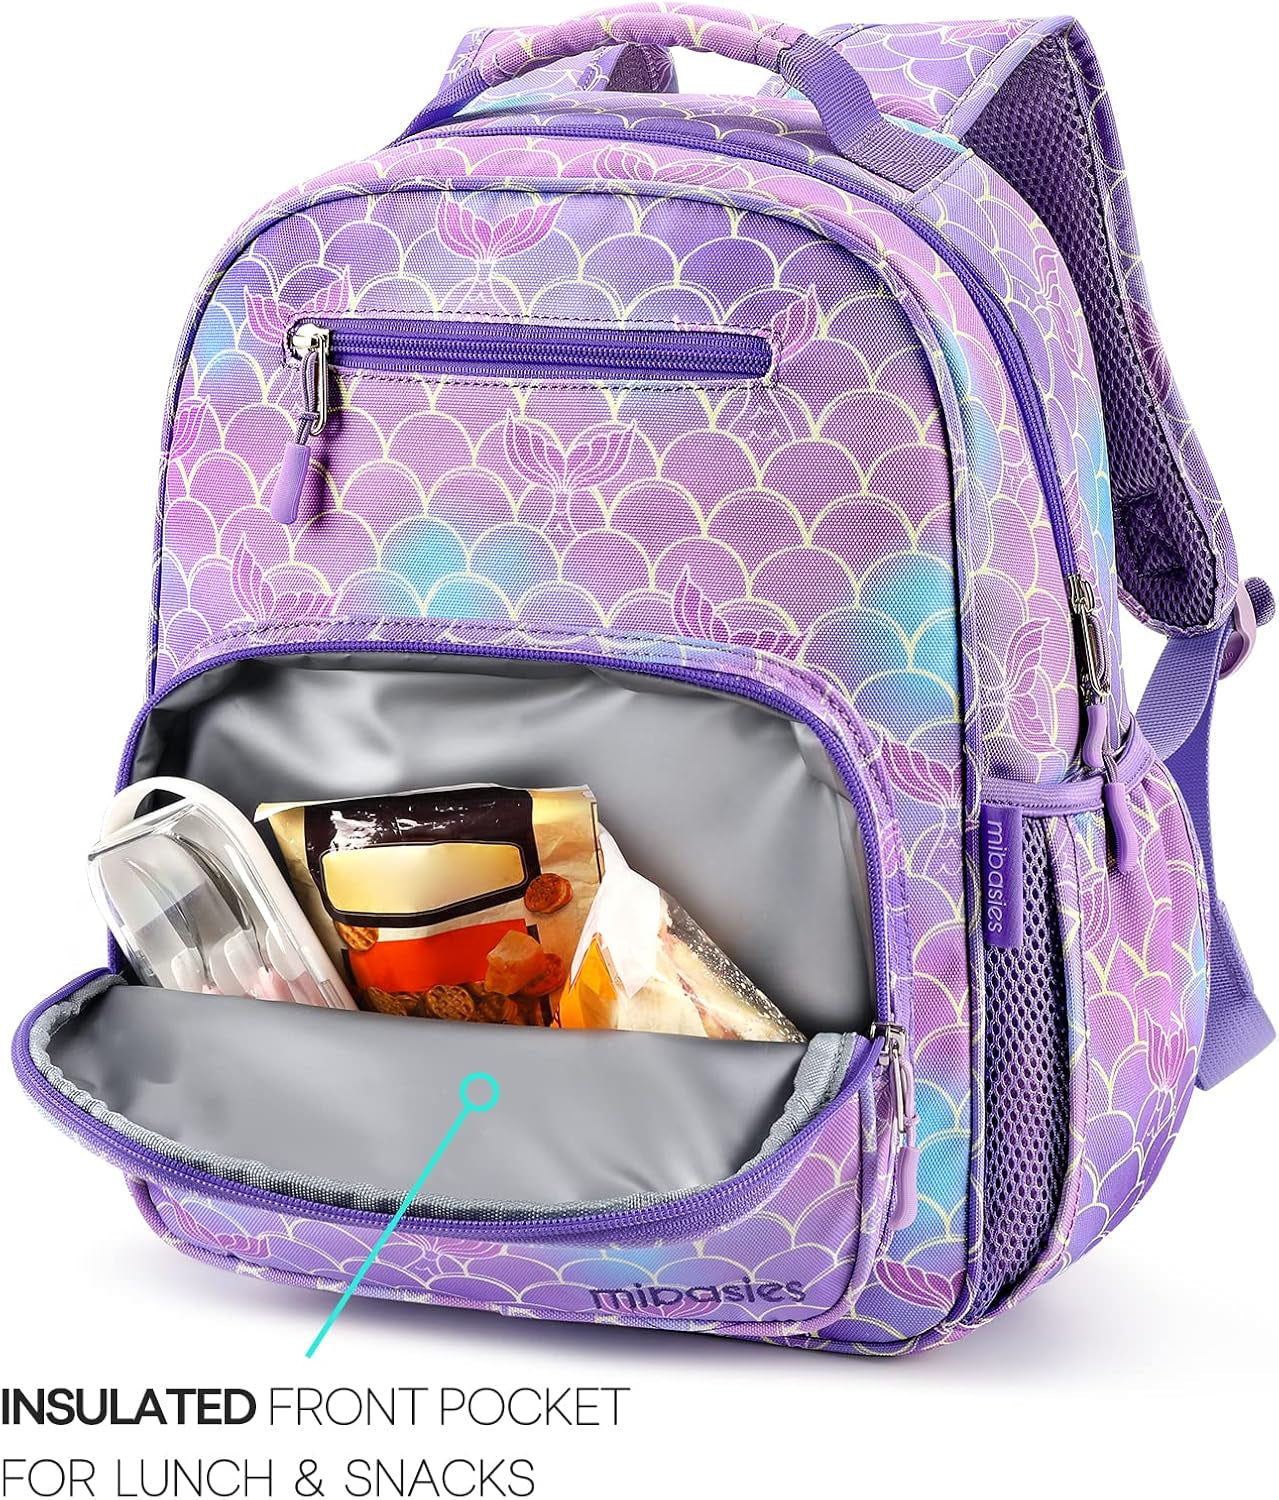 Toddler Backpack for Girls and Boys 2-4, Preschool Kindergarten Backpack, Cute Kids Backpacks for Girls（Glitter Gradient Purple）